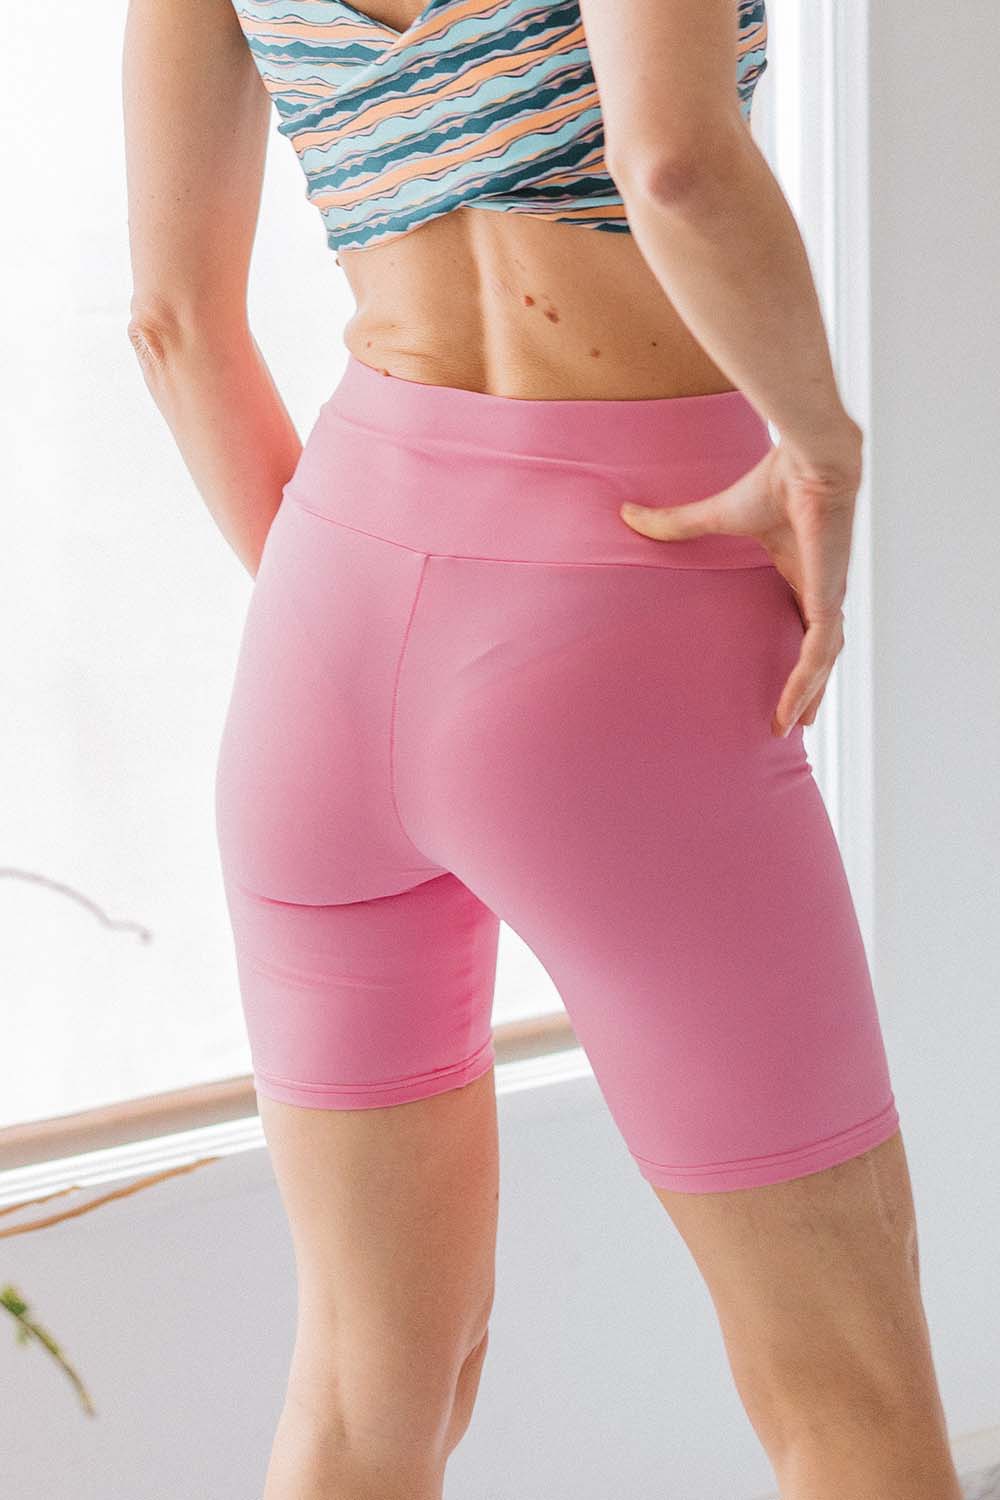 imagen de detalle lateral de los shorts rosado fancy